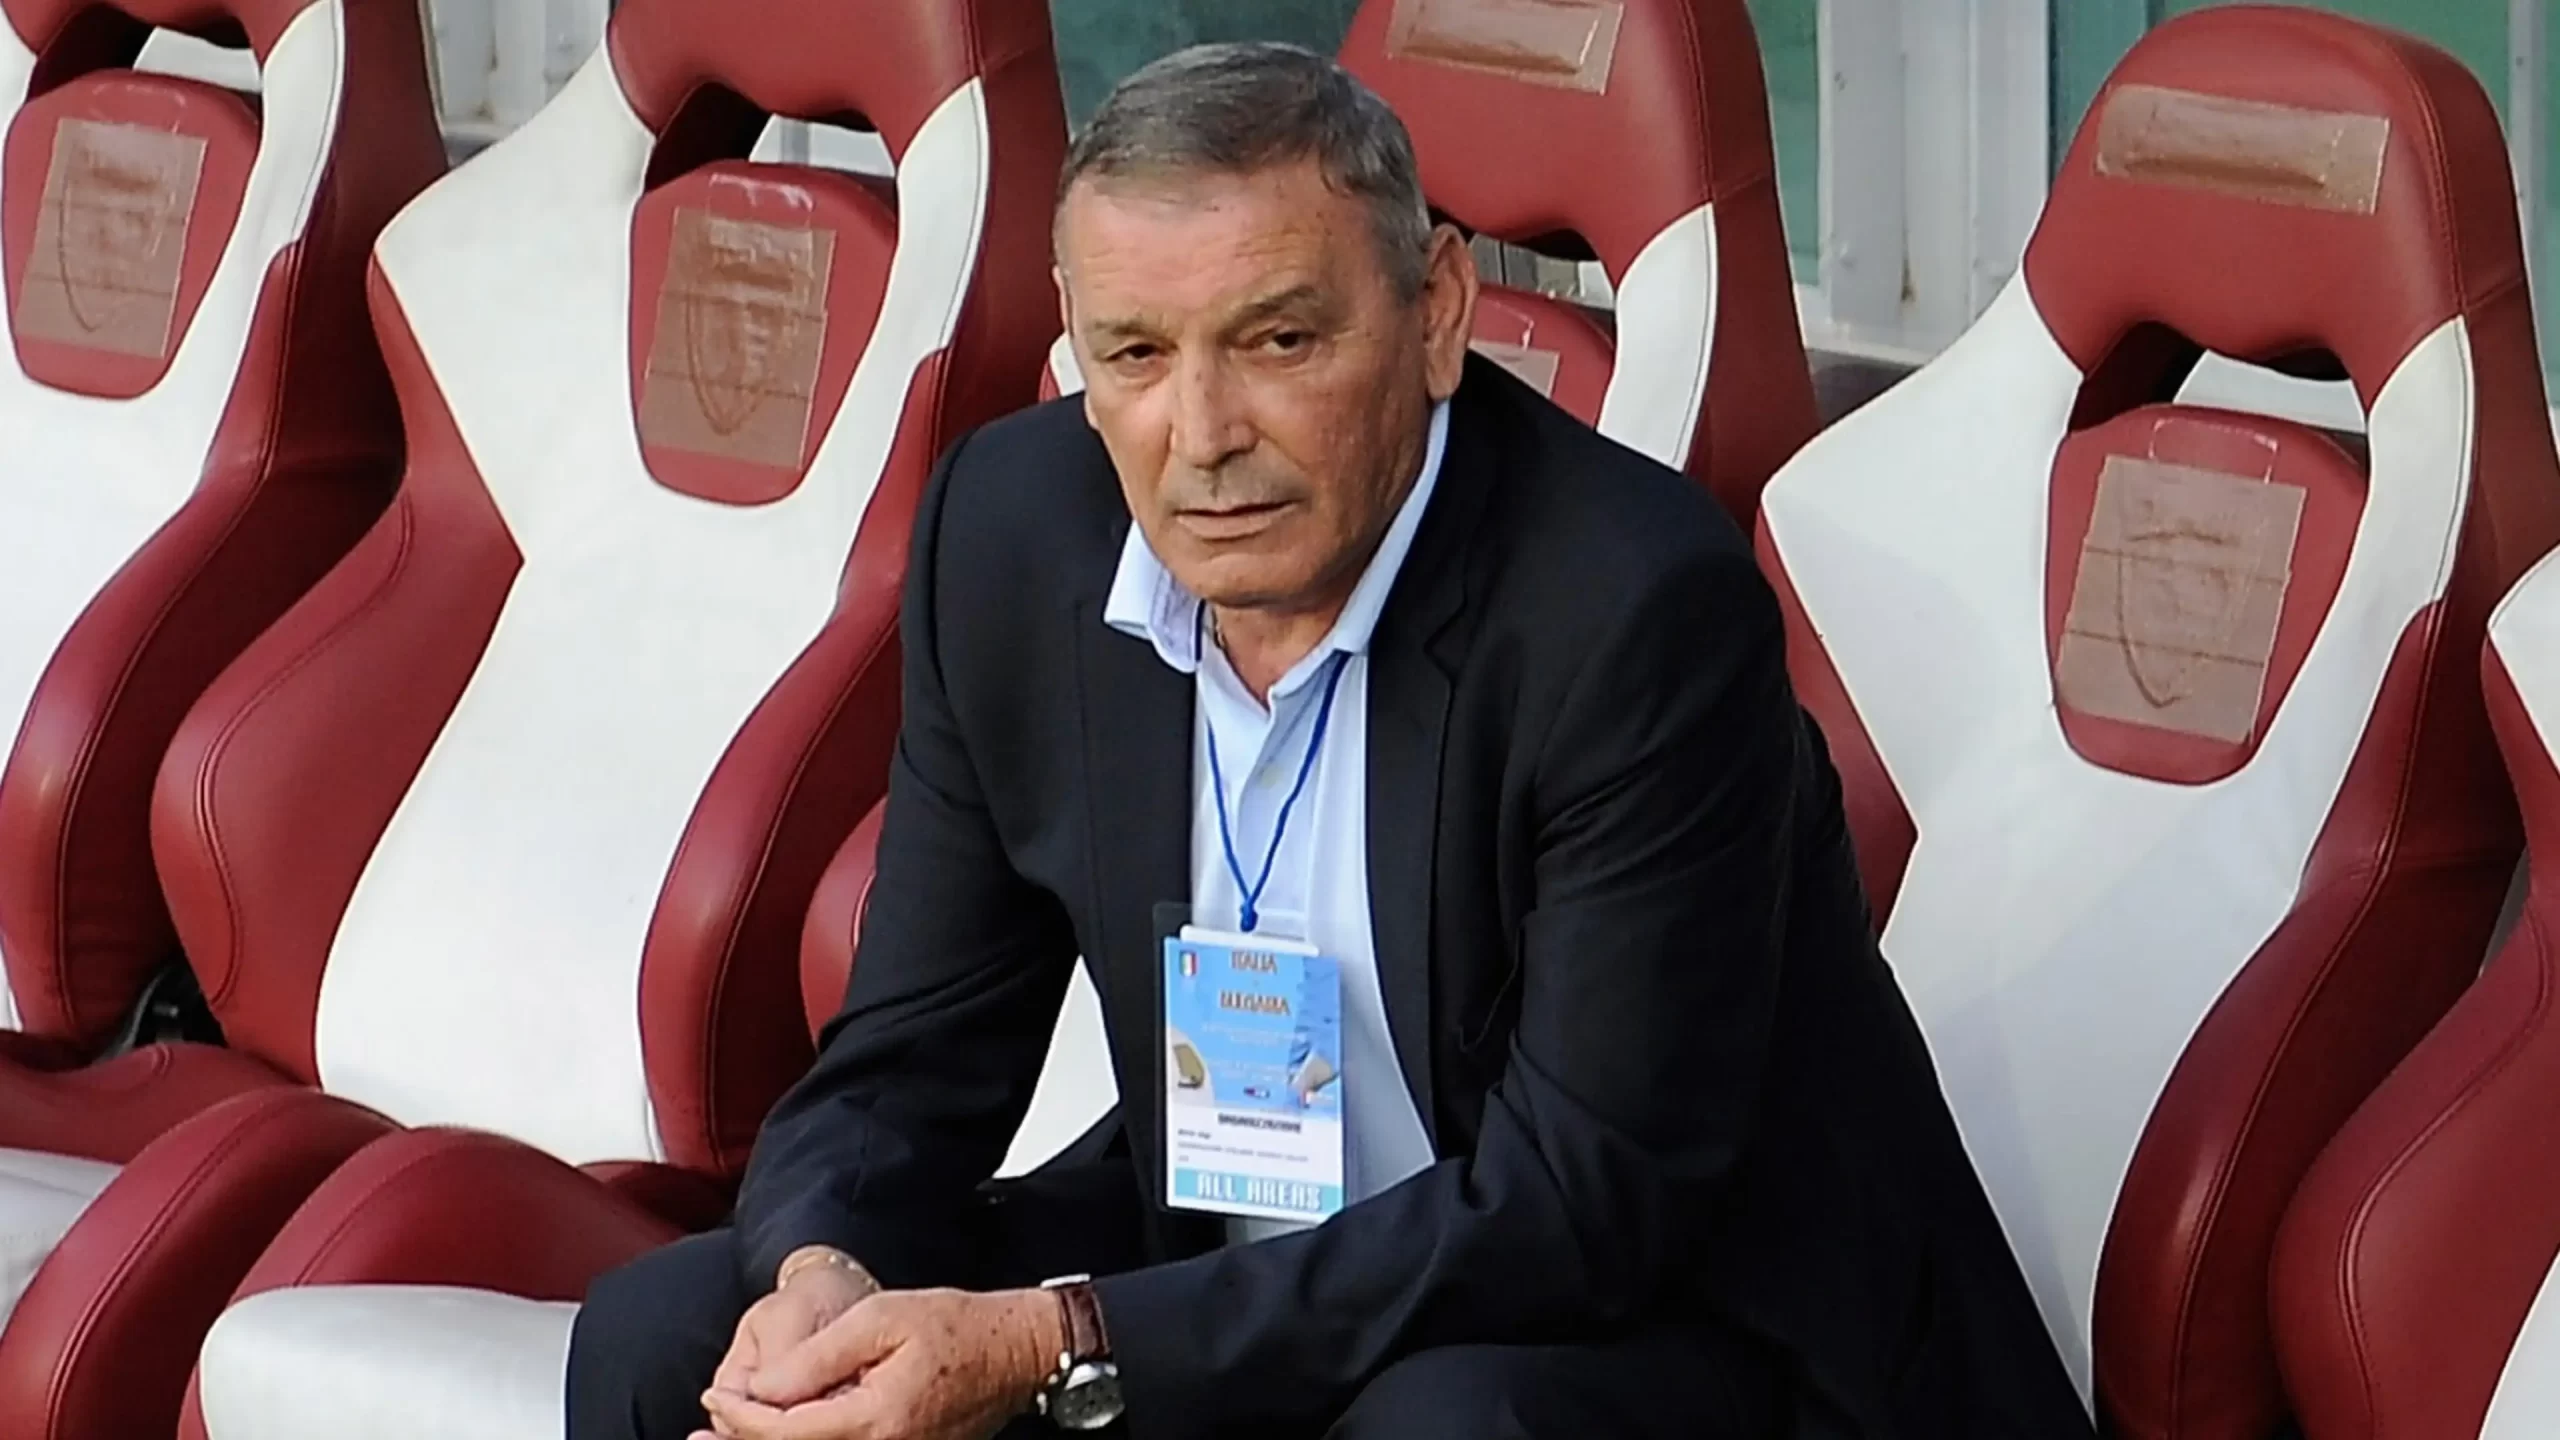 Gigi Riva, leggenda del calcio e simbolo dello storico scudetto del Cagliari, è deceduto a seguito di un infarto e delle complicazioni successive. Aveva 79 anni.